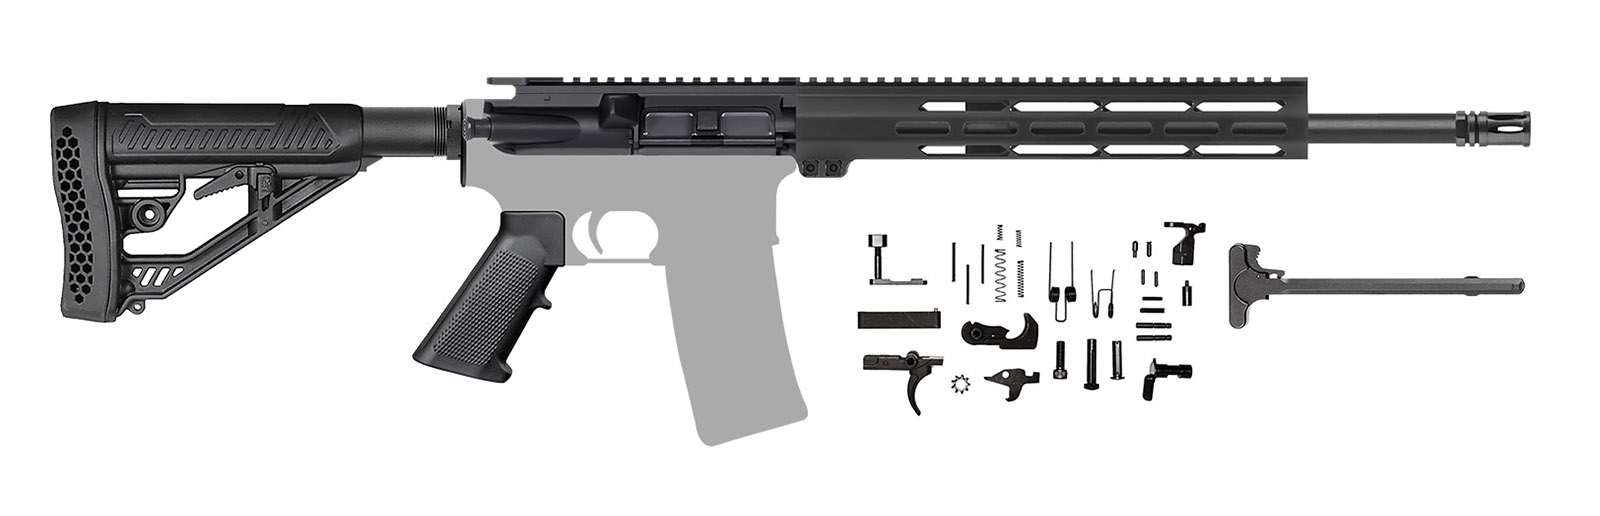 ar15-blemished-rifle-kit